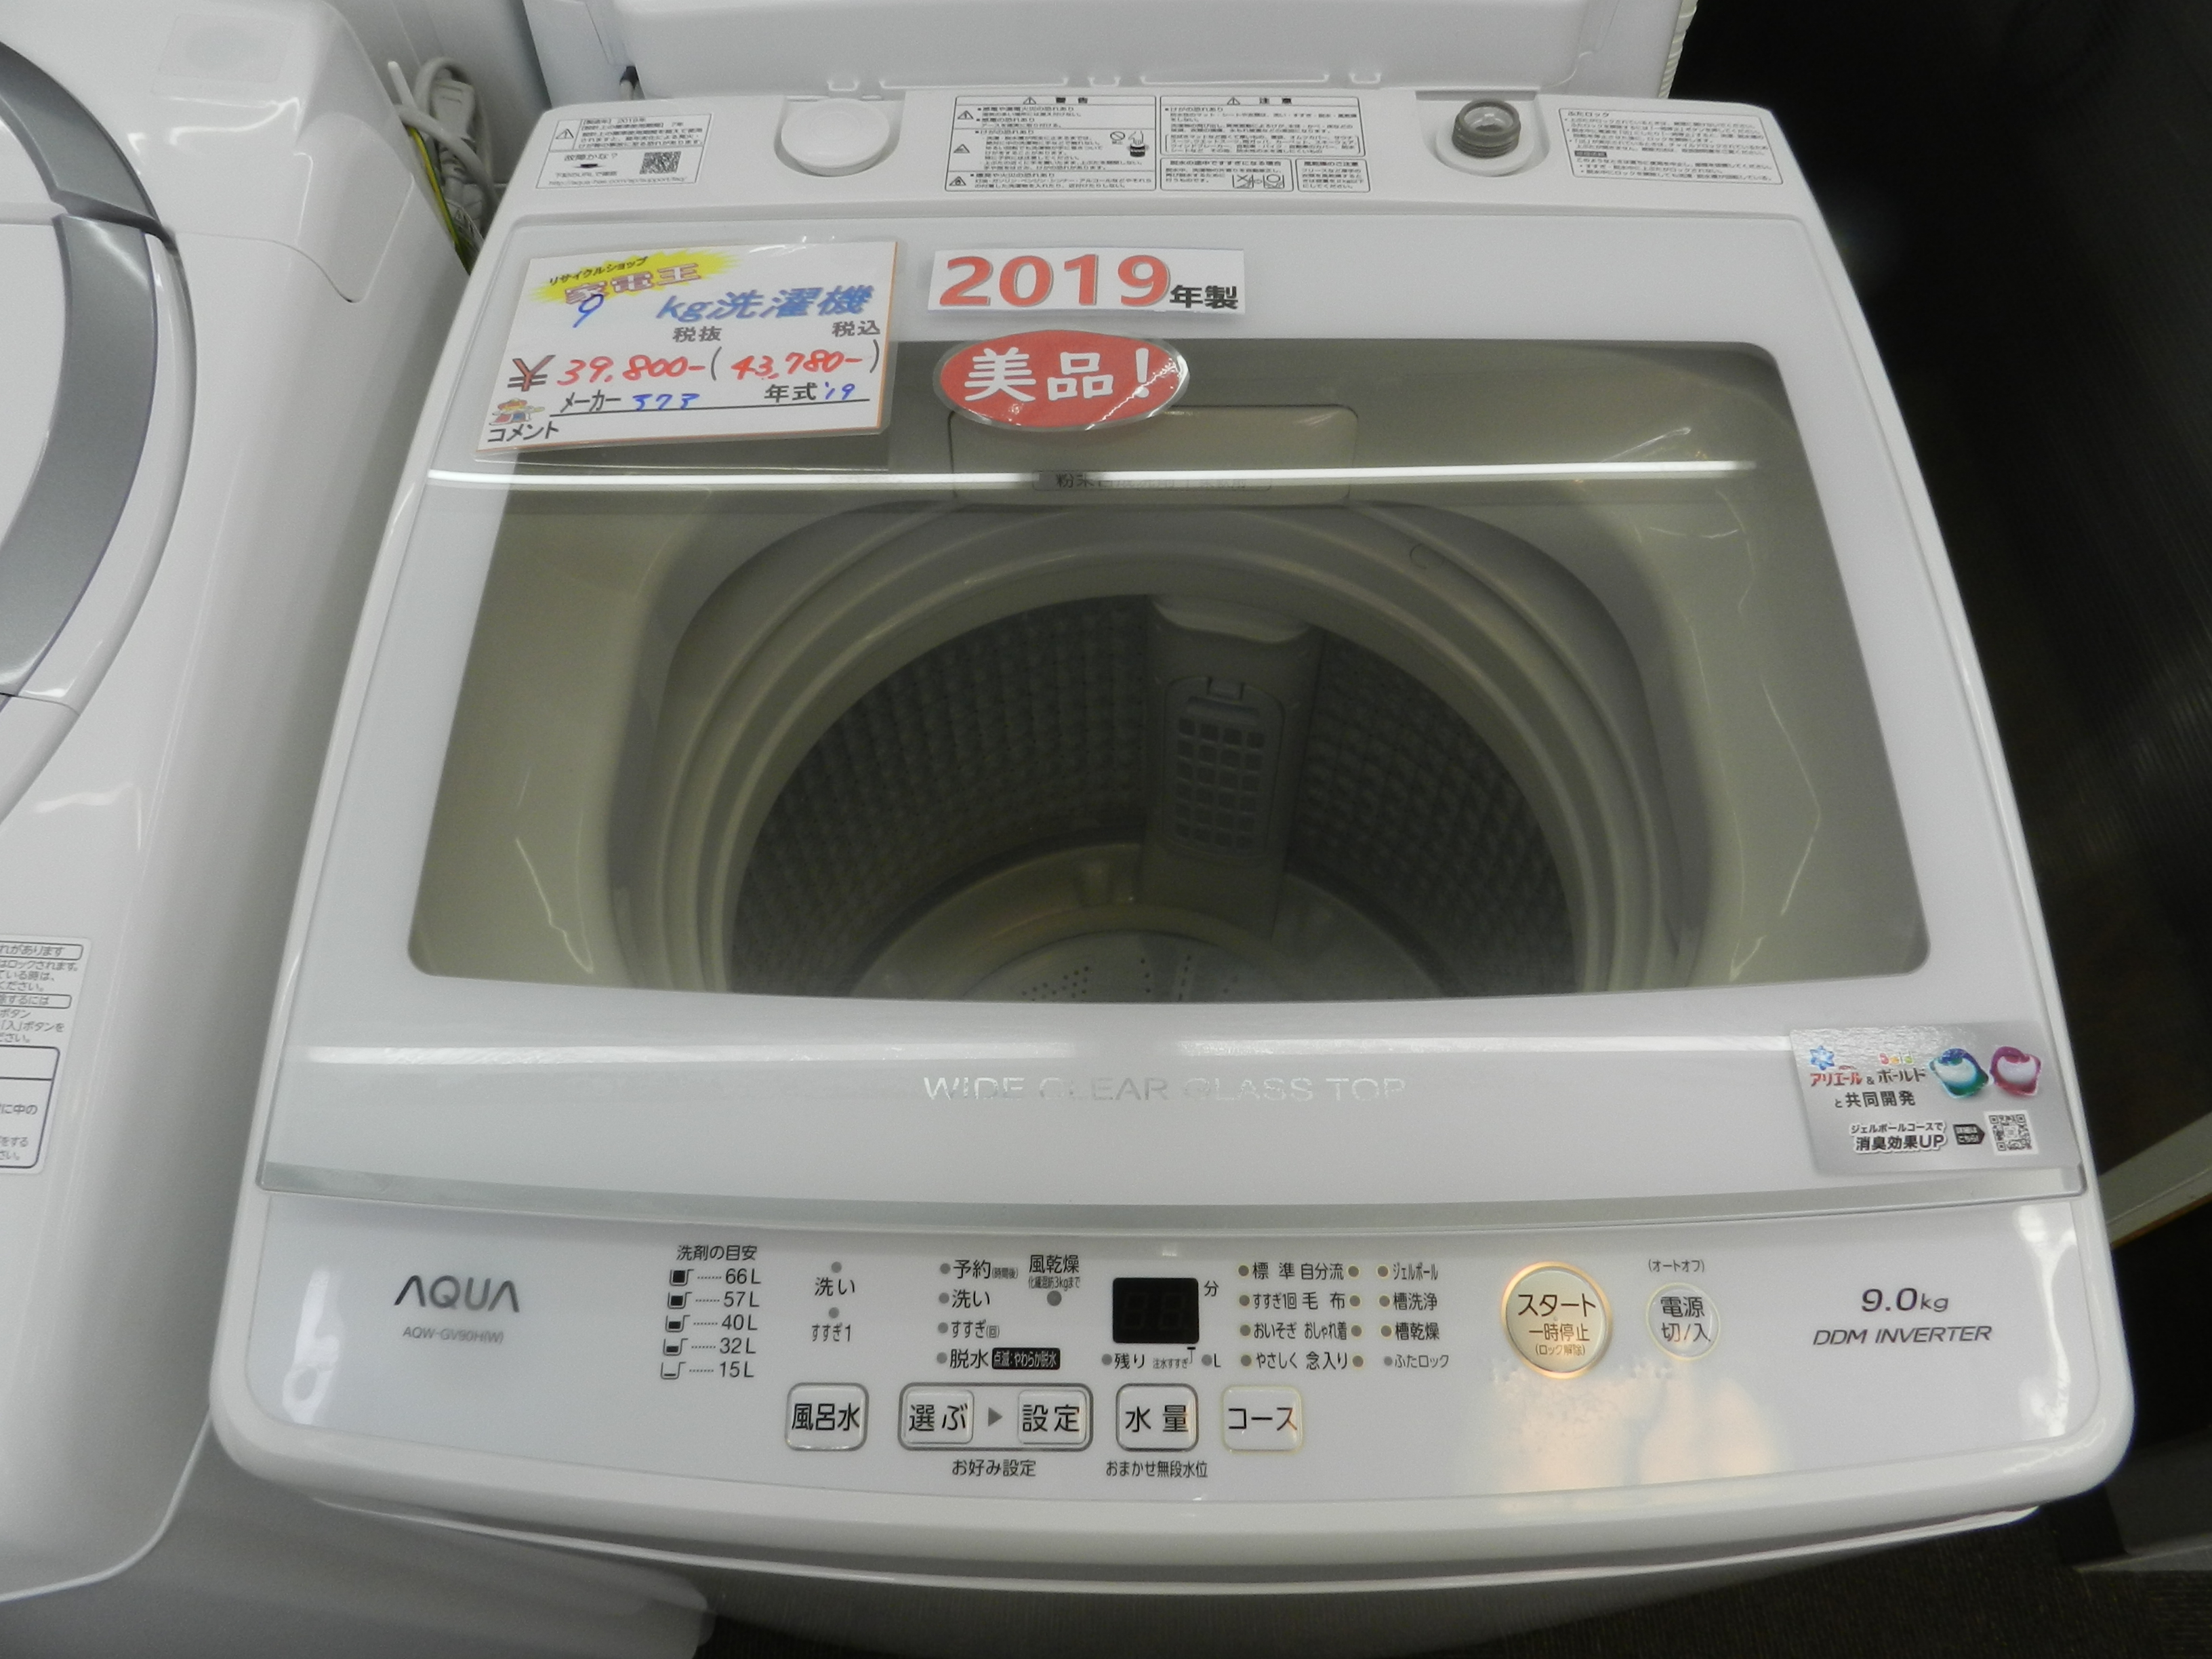 送料込! AQUA 全自動洗濯機 AQW-GV90H 9㎏ 2019年製 - novius-it.hu